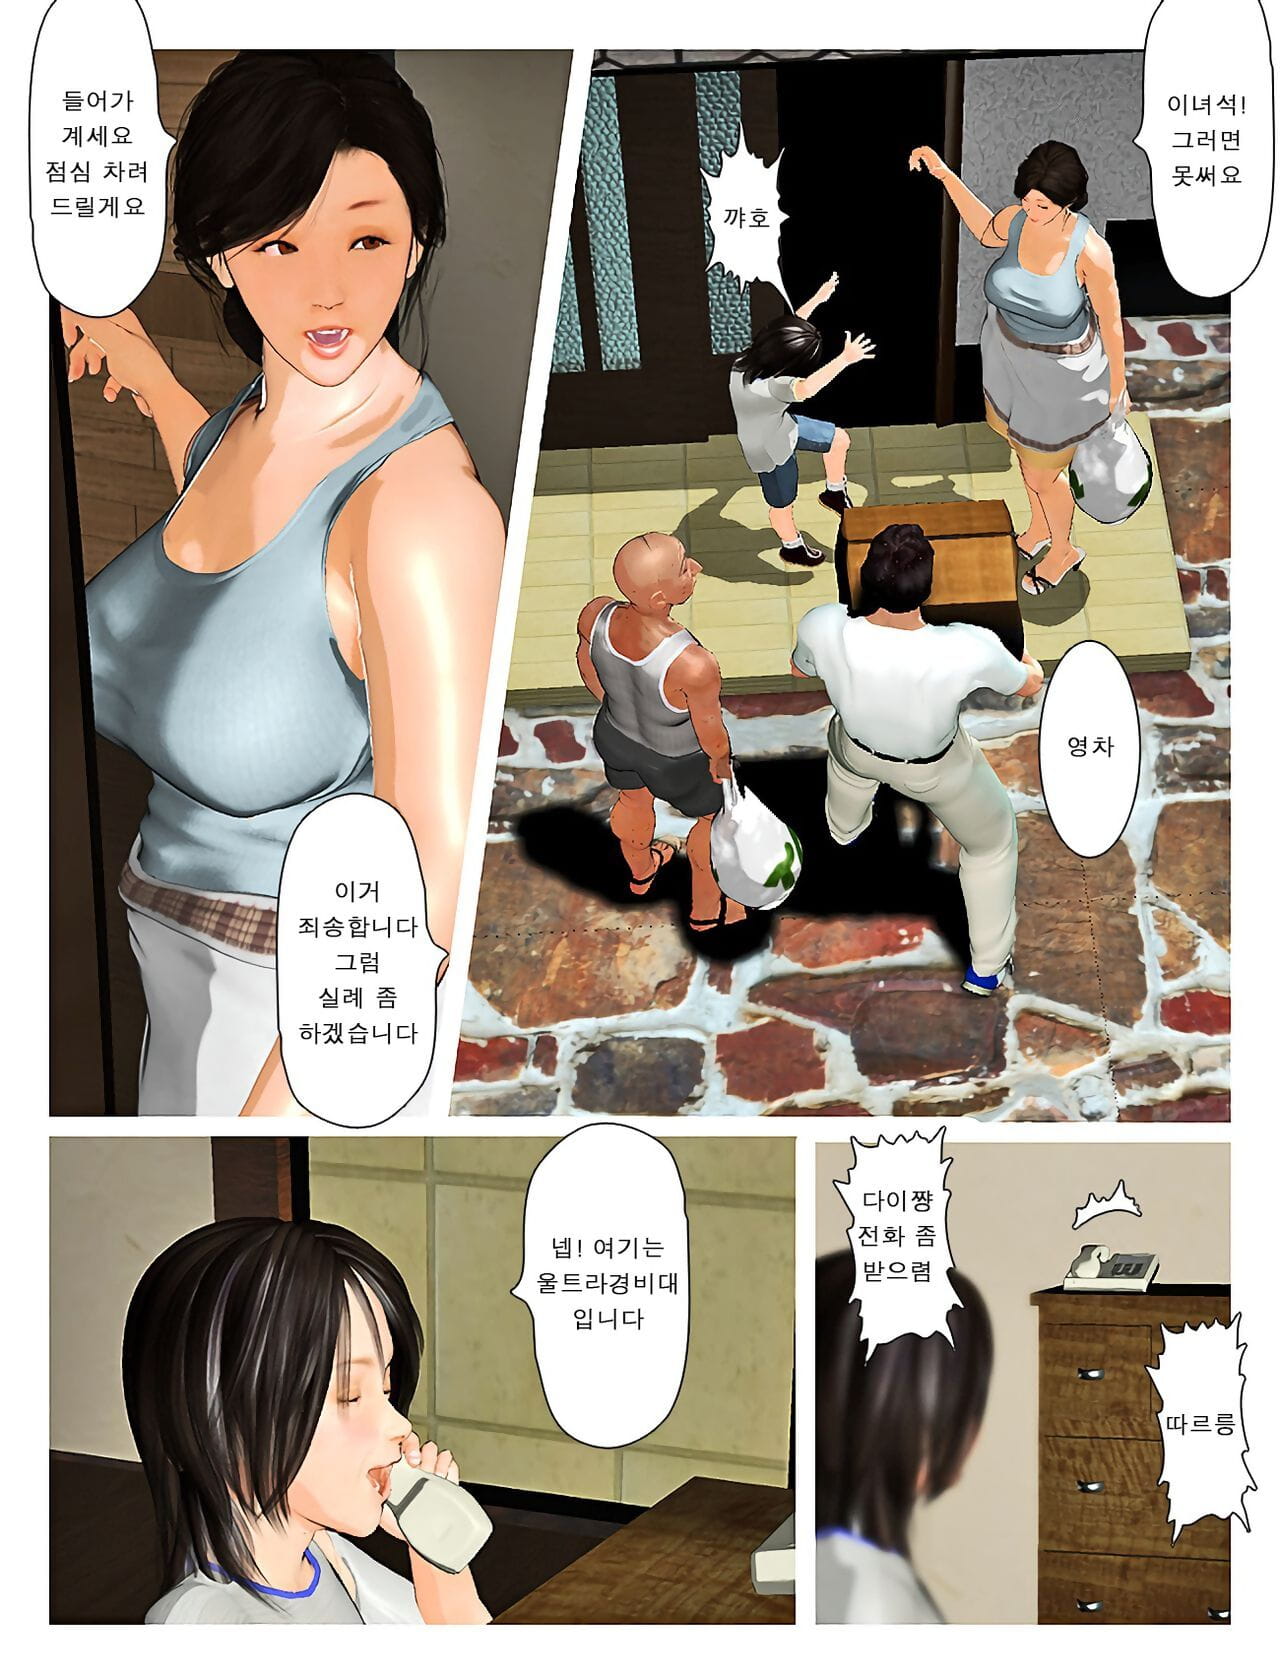 Kyou pas de misako san 2019:3 오늘의 미사코씨 2019:3 page 1